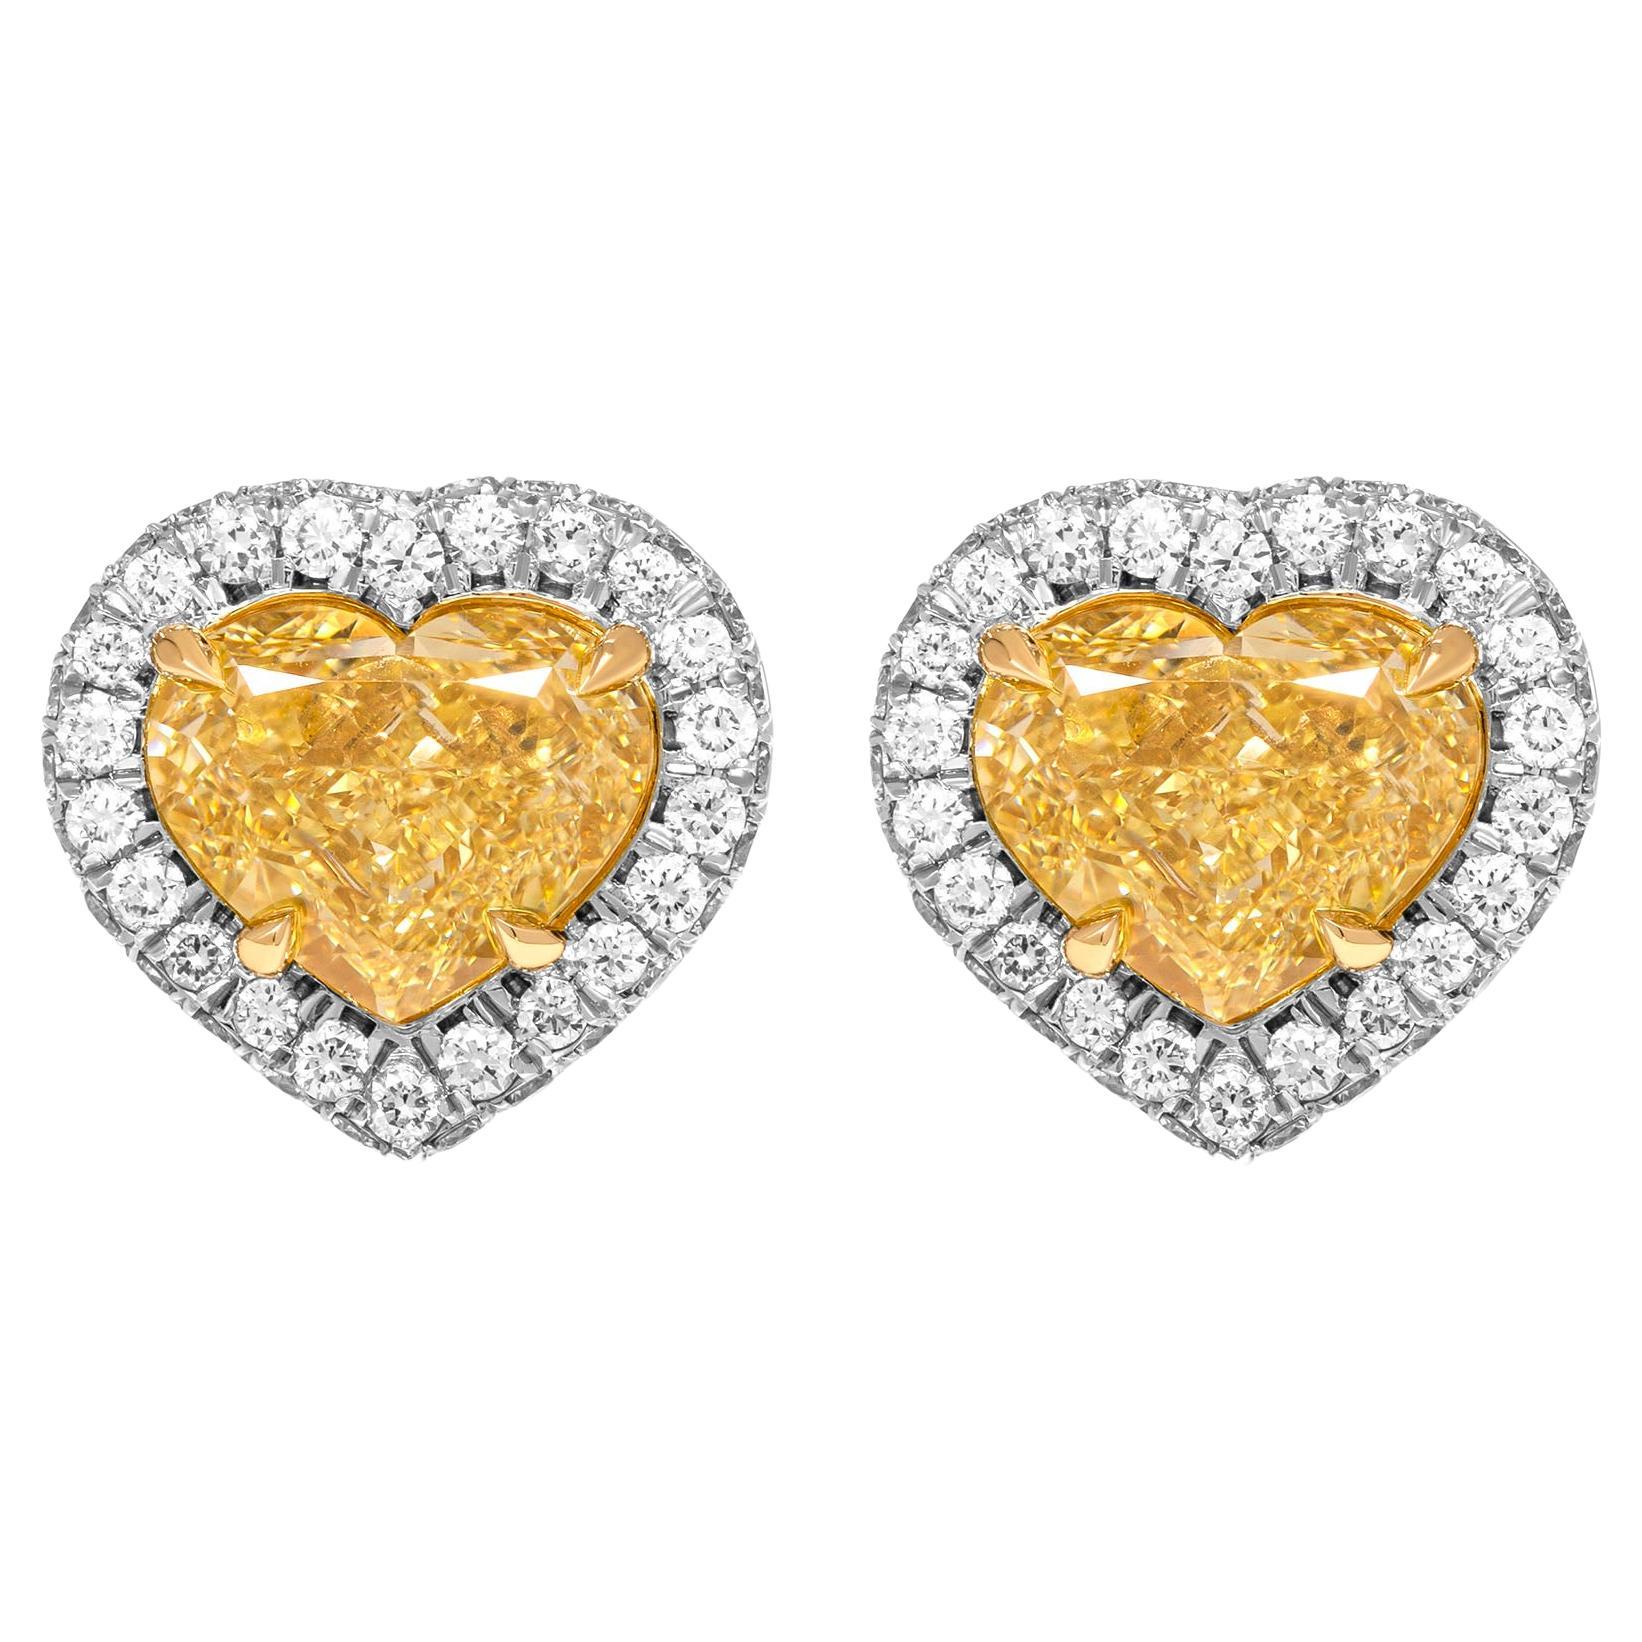 GIA Certified Halo Stud Earrings with Fancy Yellow Heart Shape Diamonds